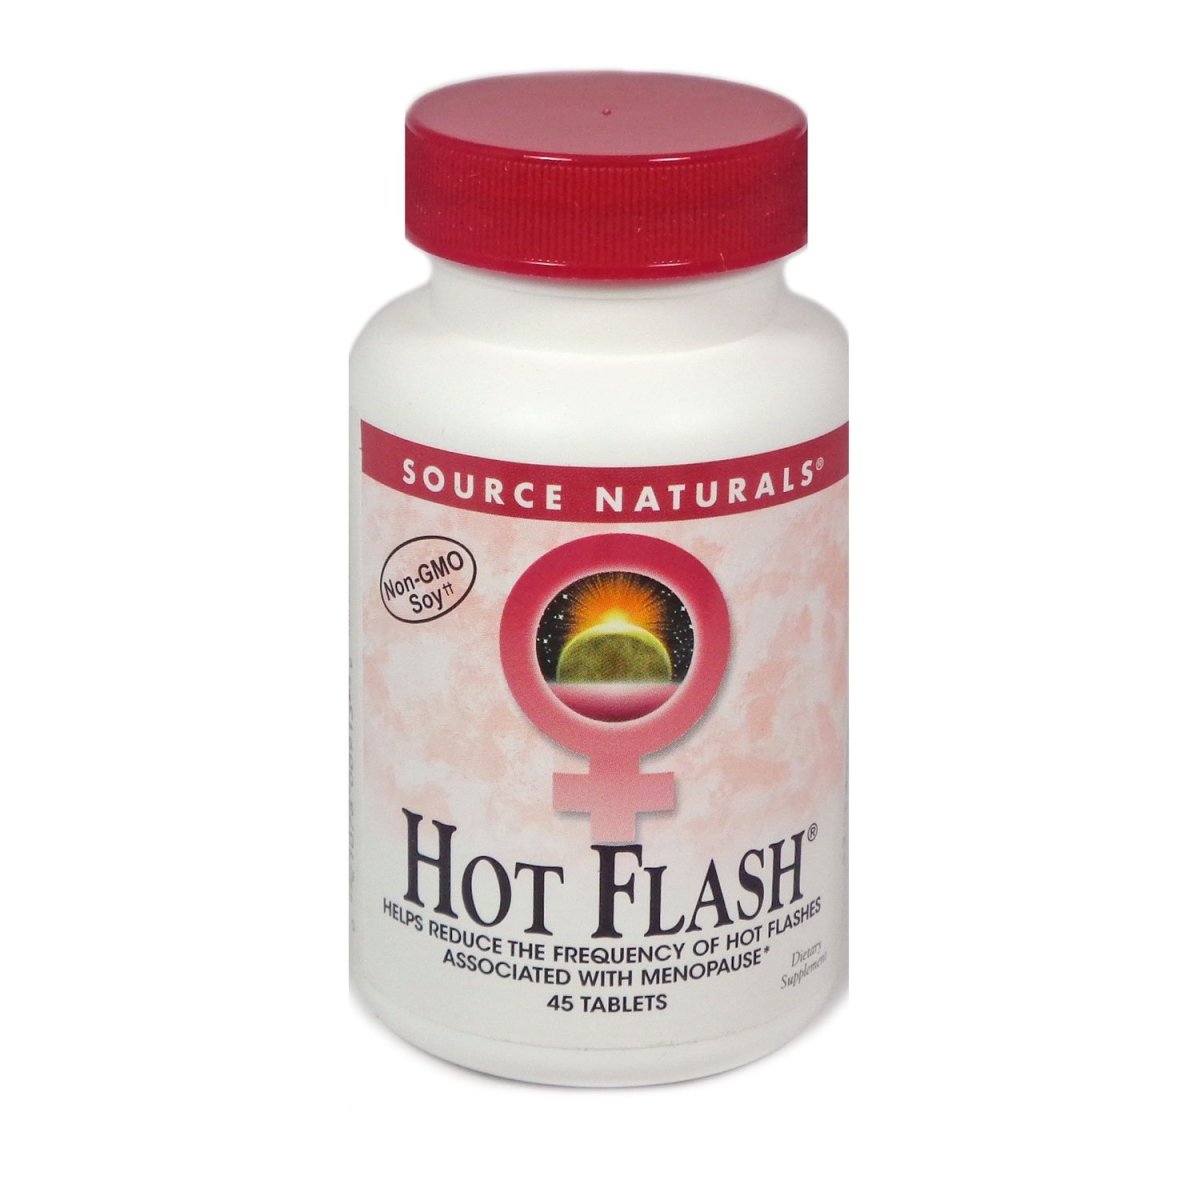 Hot Flash Source Naturals, Inc. 45 Tabs